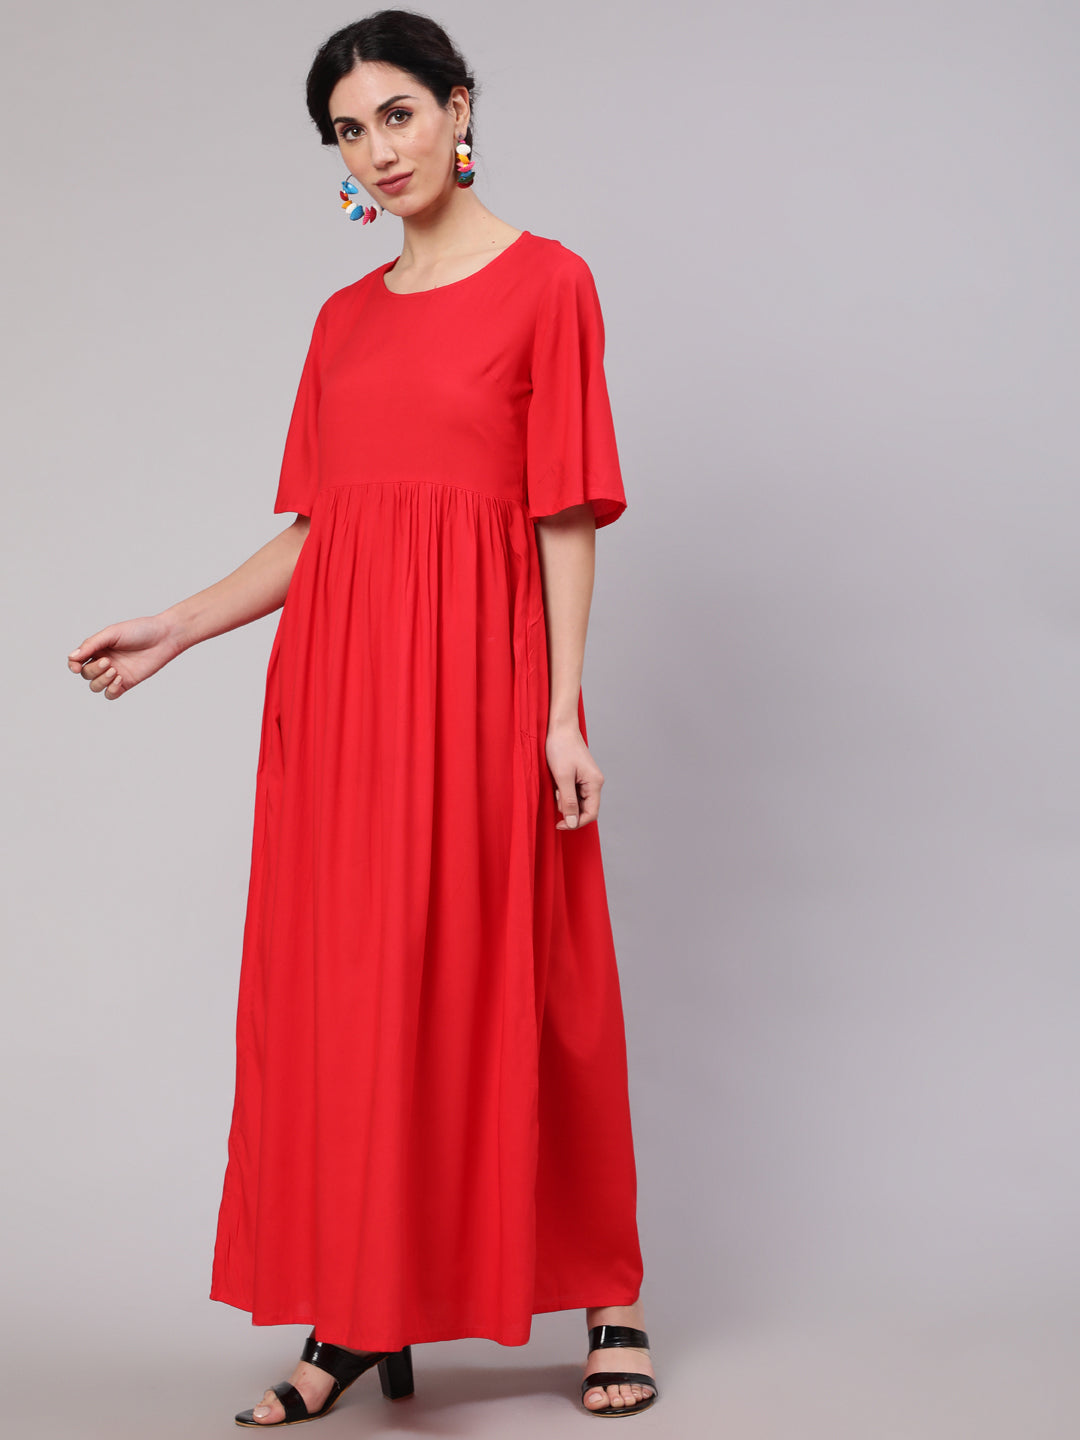 Women's Red Maxi Dress With Ikat Print Dupatta - Aks